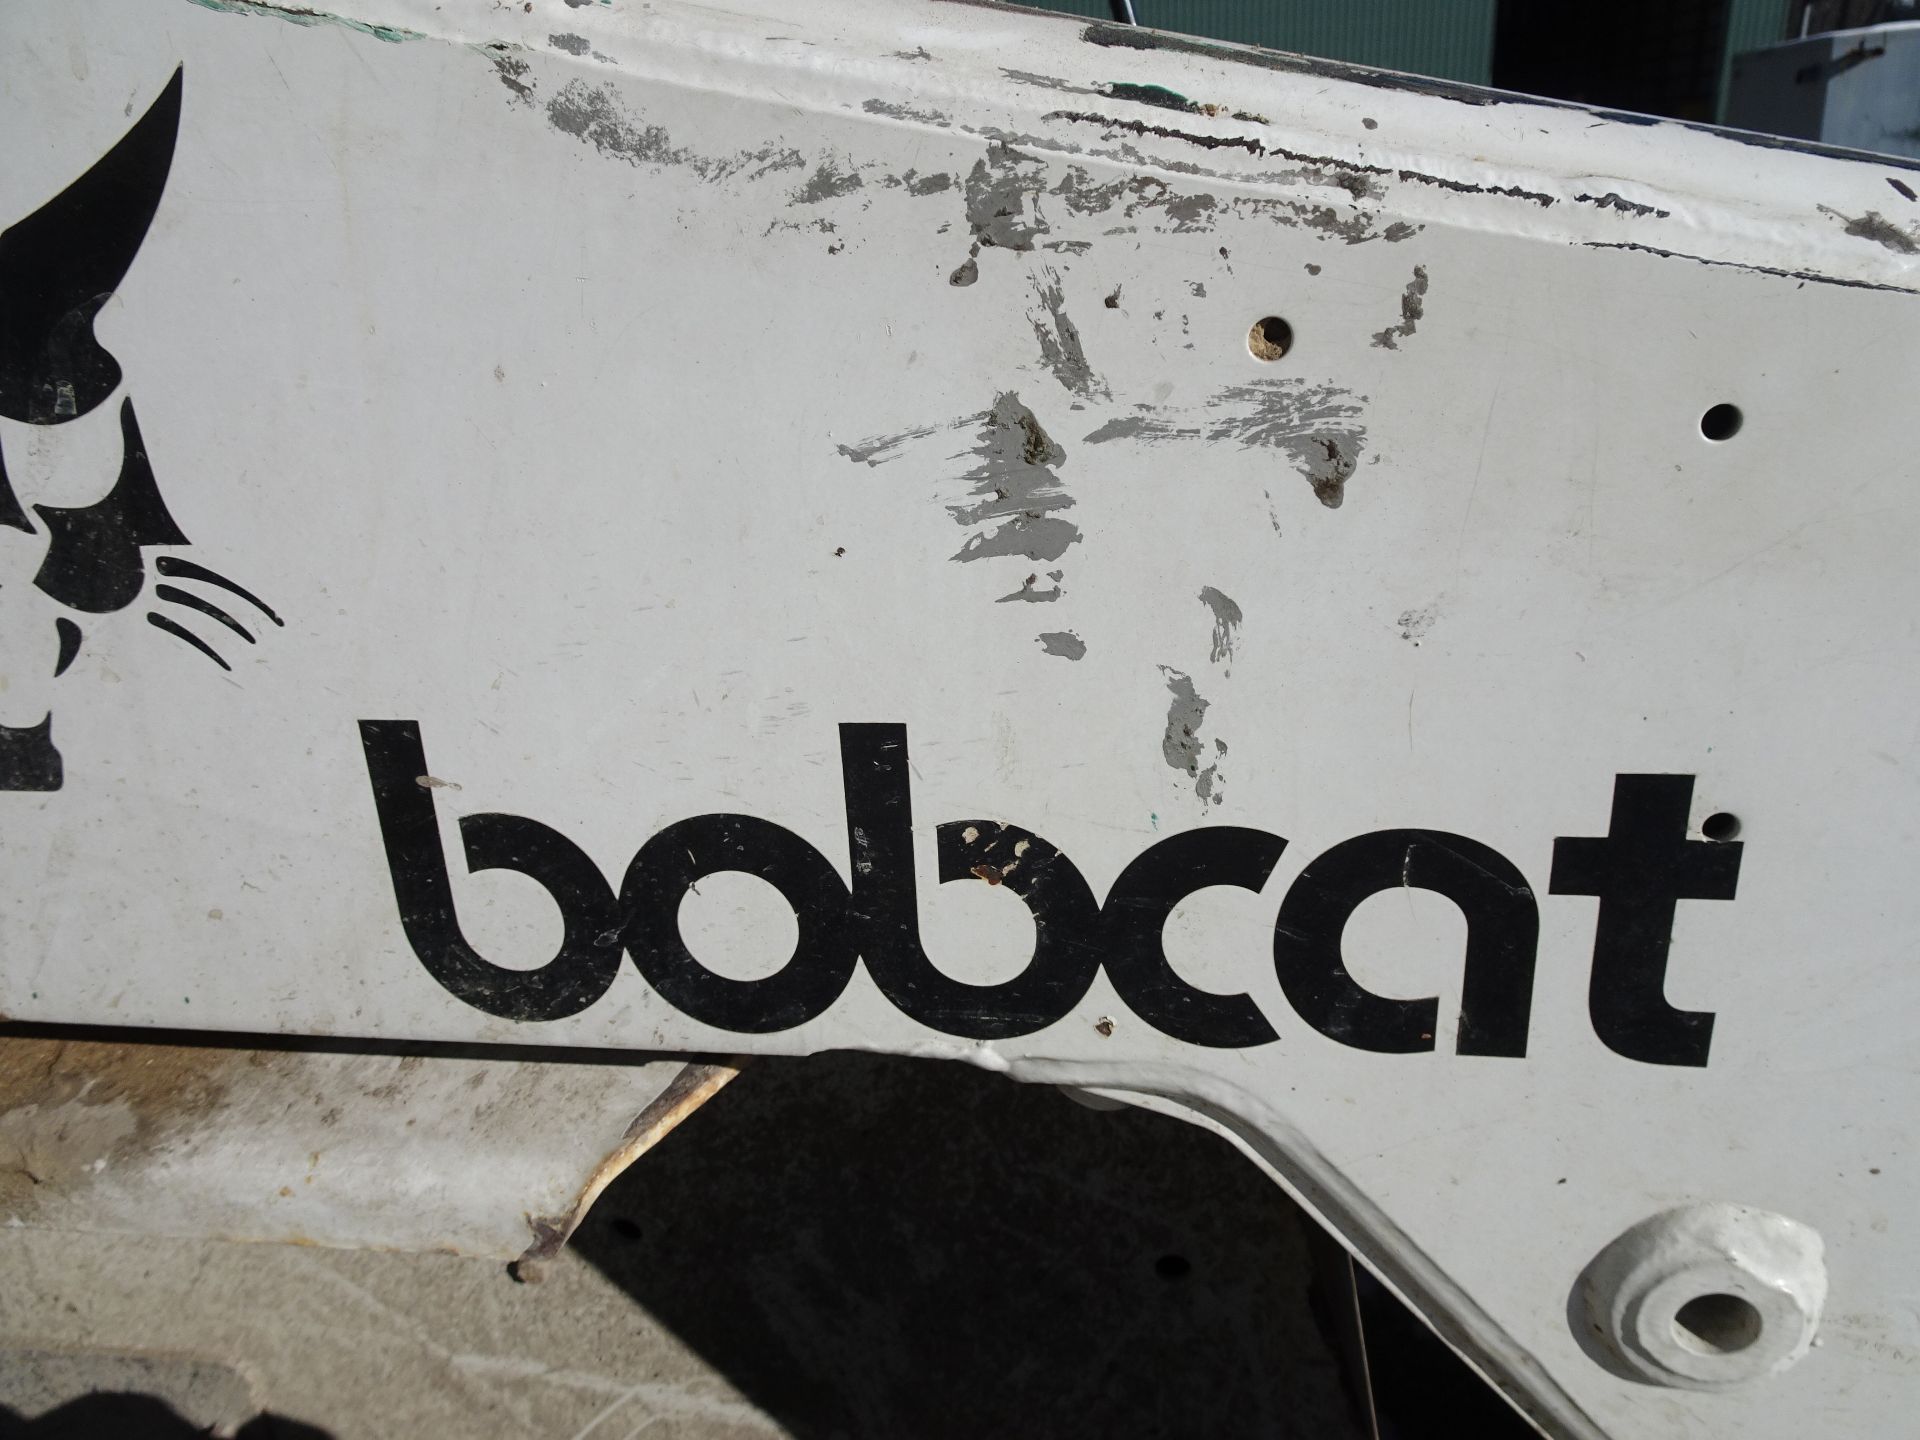 Bobcat Model 763 Skid Steer Loader - Image 3 of 4